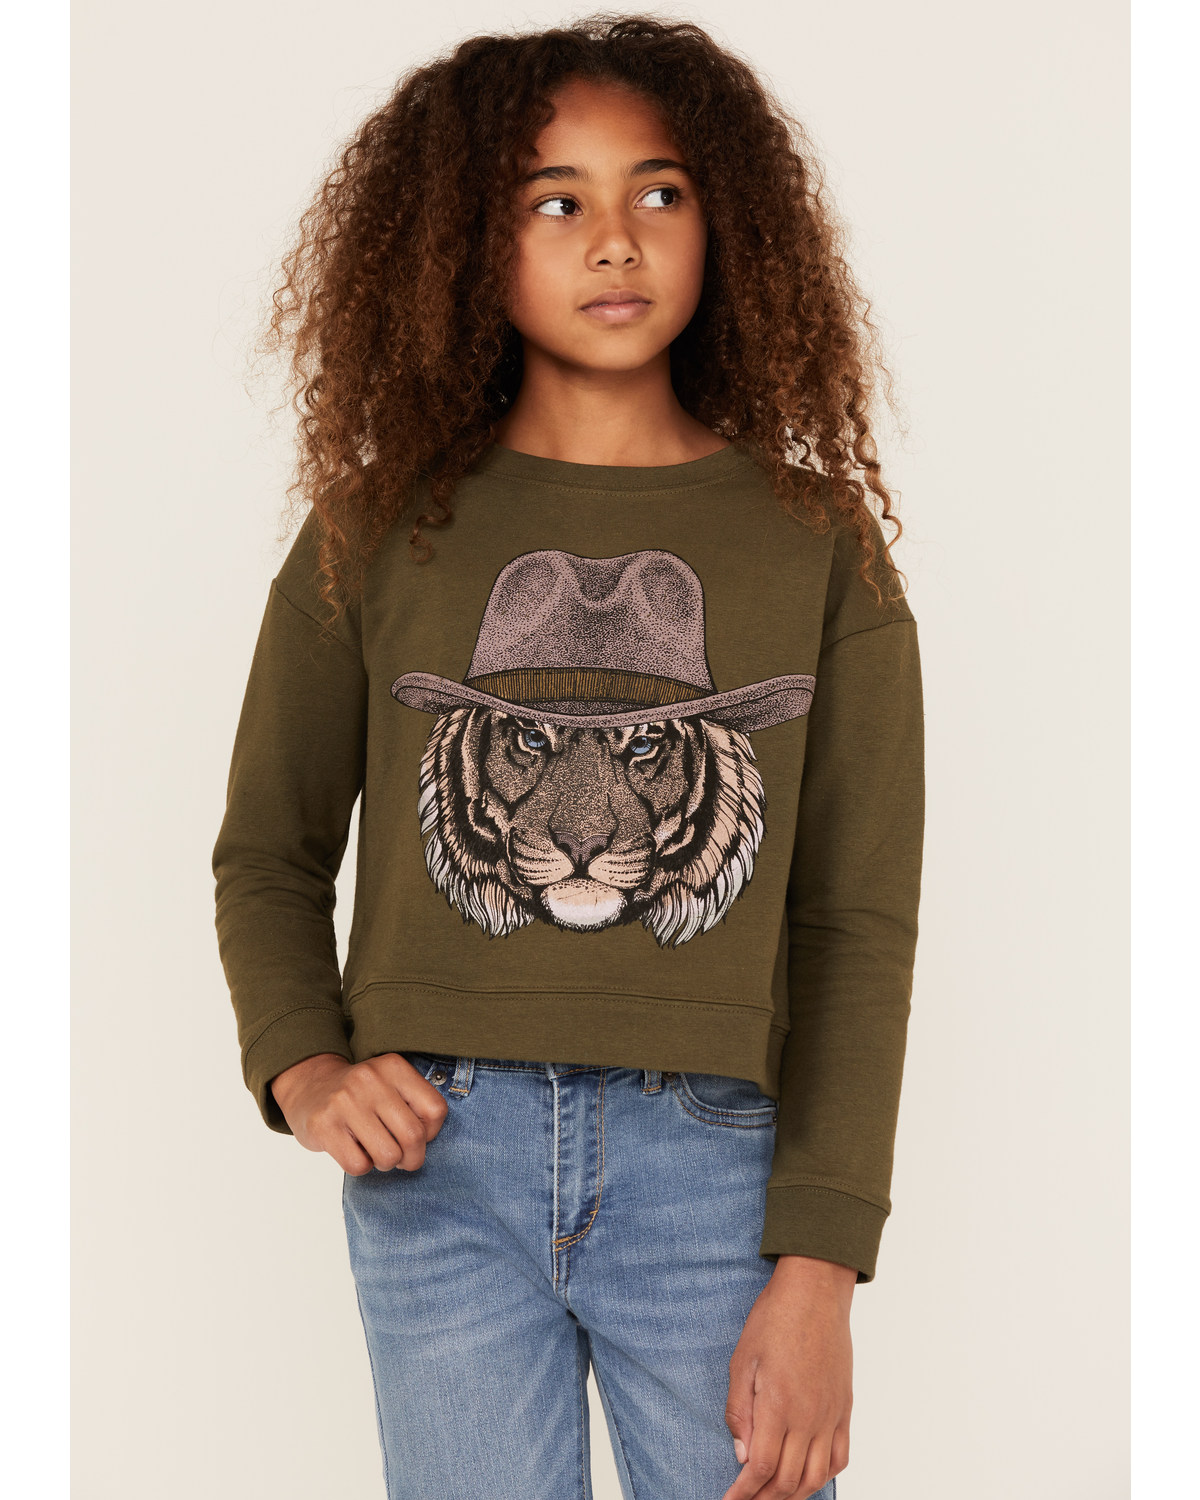 Somewhere West Girls' Cowboy Tiger Graphic Sweatshirt